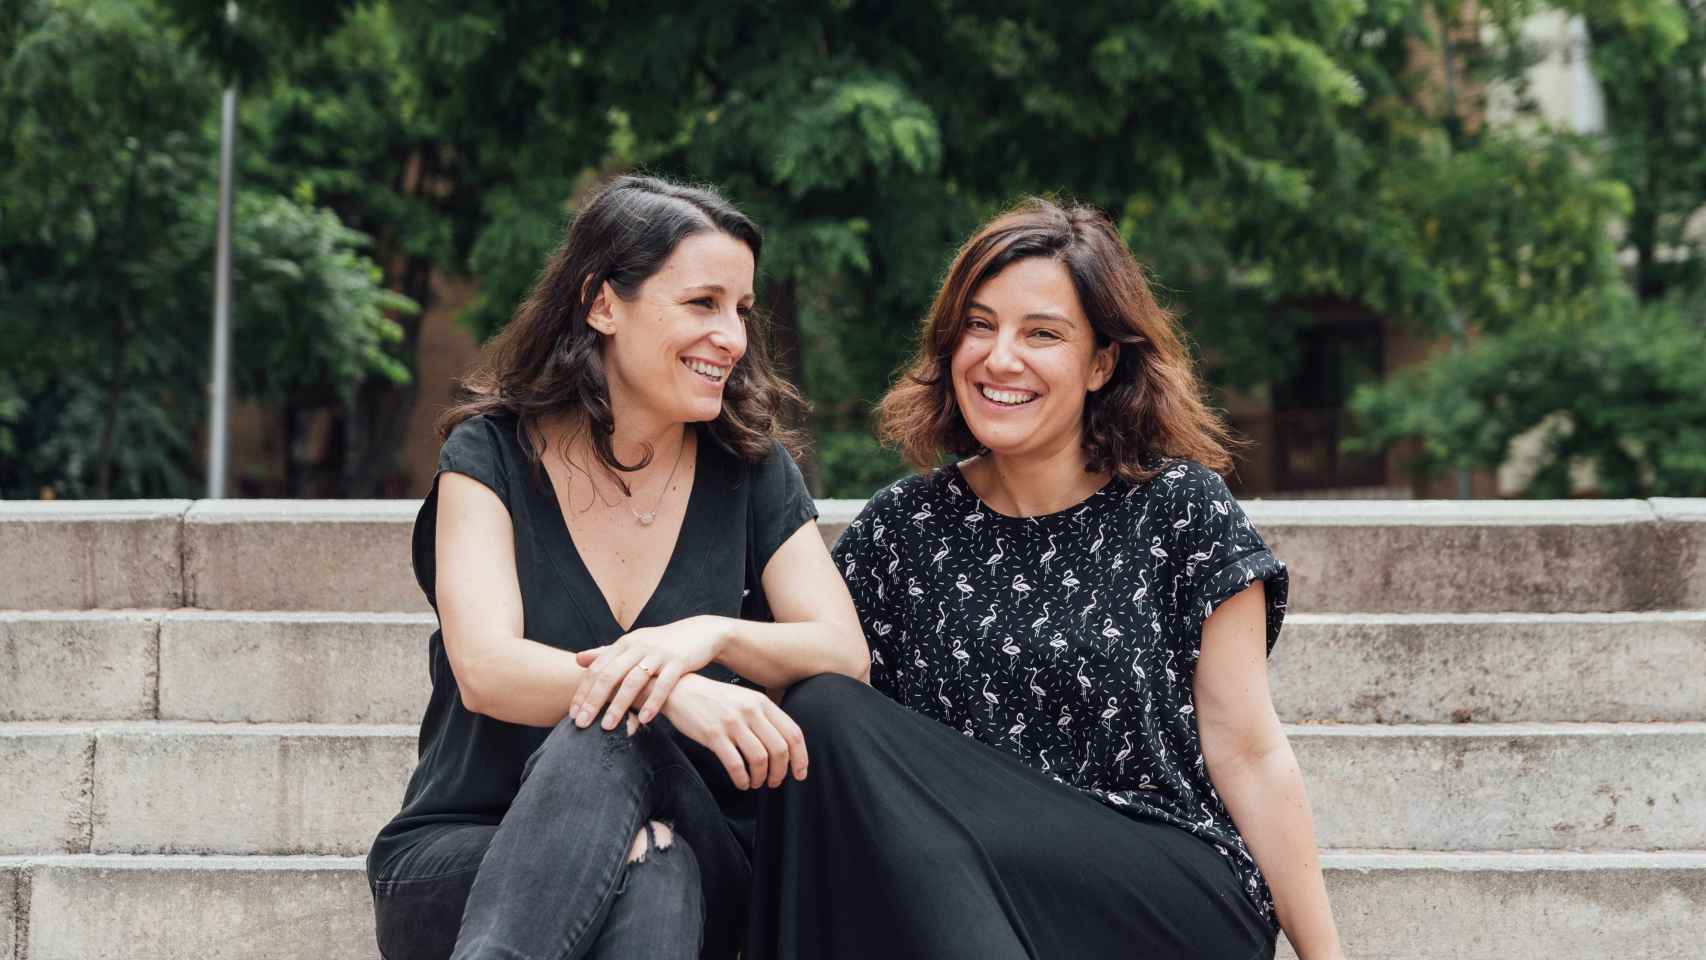 Inés Vázquez (CEO) y Rosario Ortiz (COO) son las fundadoras de Adalab.